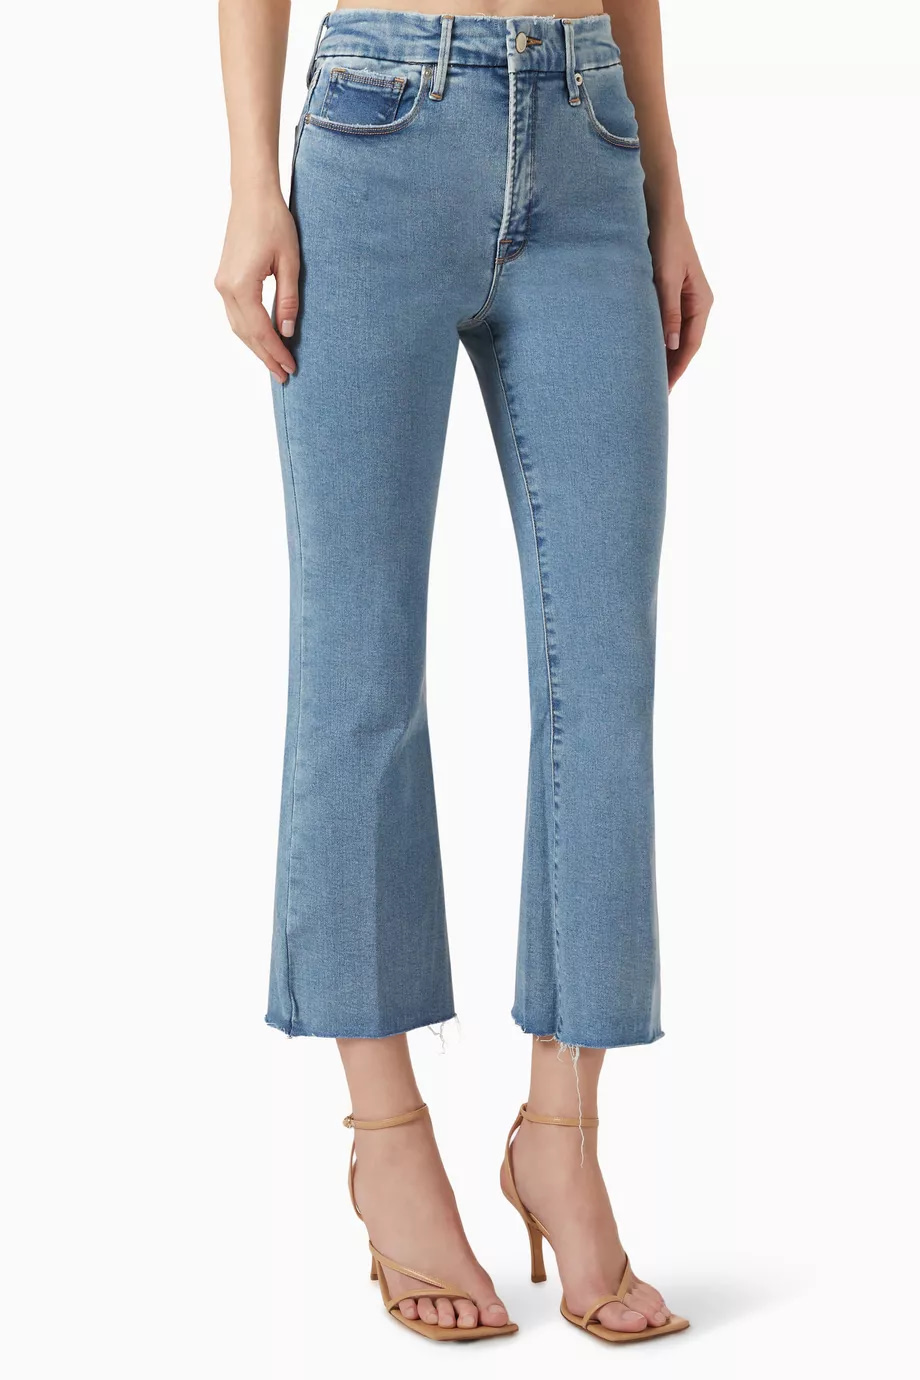 بنطال جينز جود ليجز قصير بحواف واسعة دينم
ملابس نسائية جينز